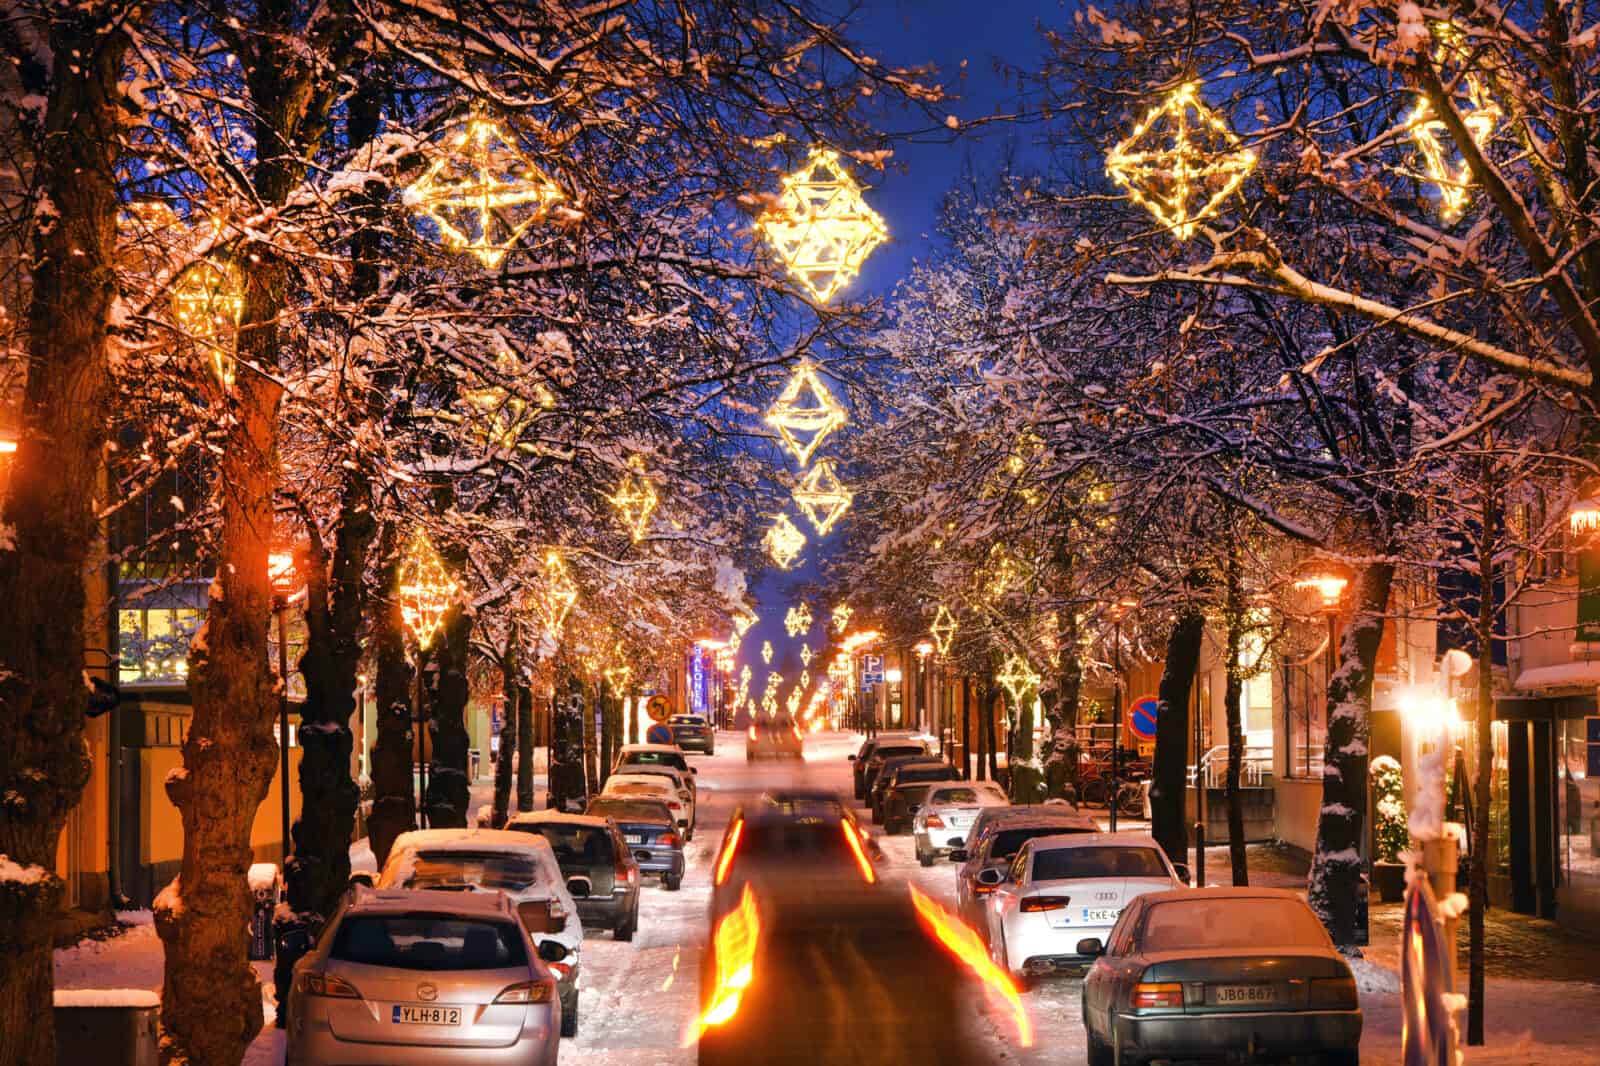 Talvinen iltanäkymä nupulakivikadulta. Katua reunustavissa puissa on himmelinmallisia, lämpimän valkoisia jouluvaloja.